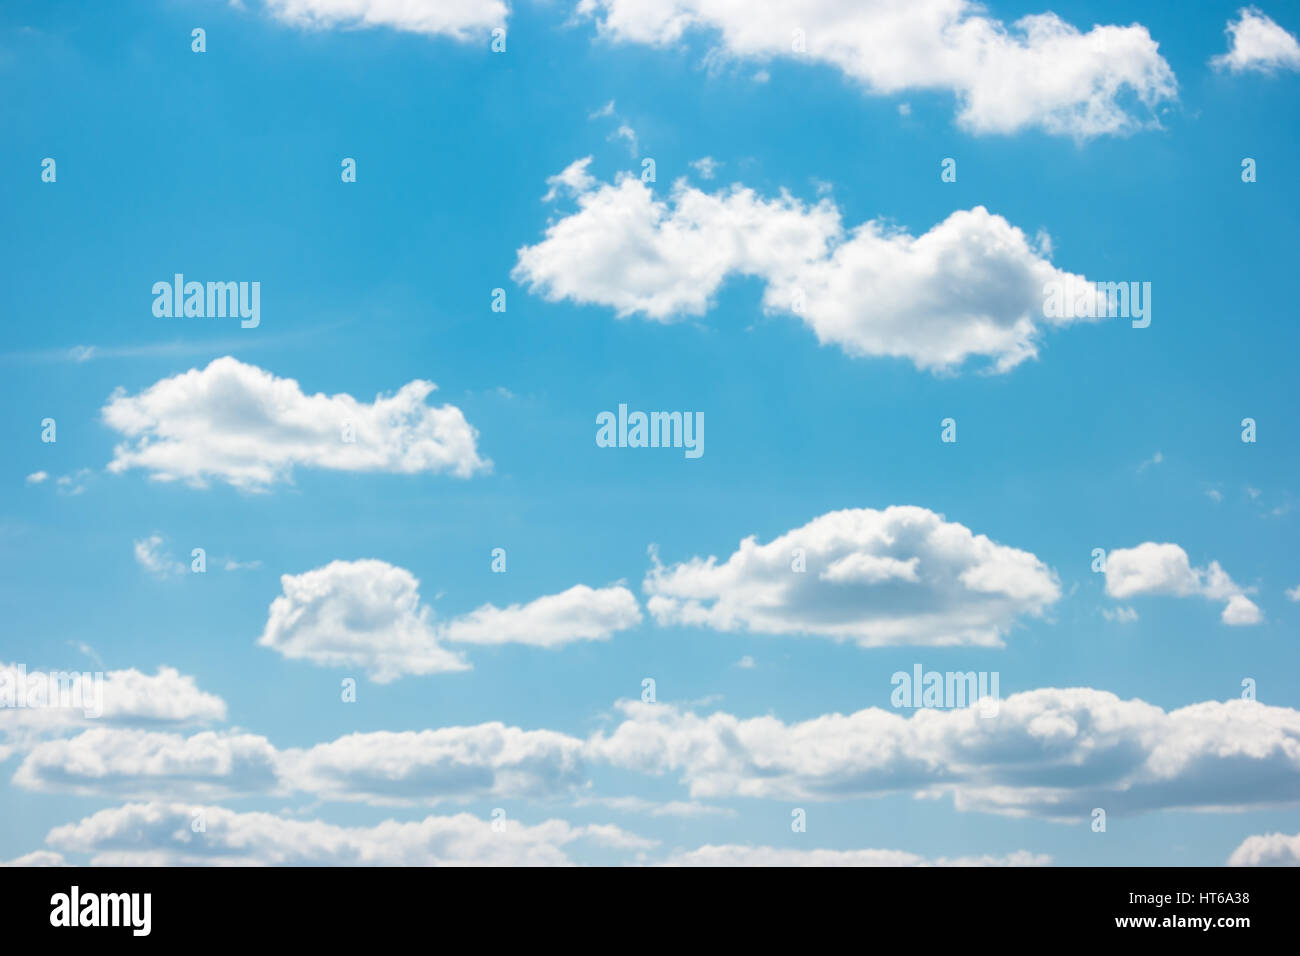 Blu cielo nuvoloso. Gruppo di nuvole bianche. La pace e la tranquillità. Impostare la tua mente libera. Foto Stock